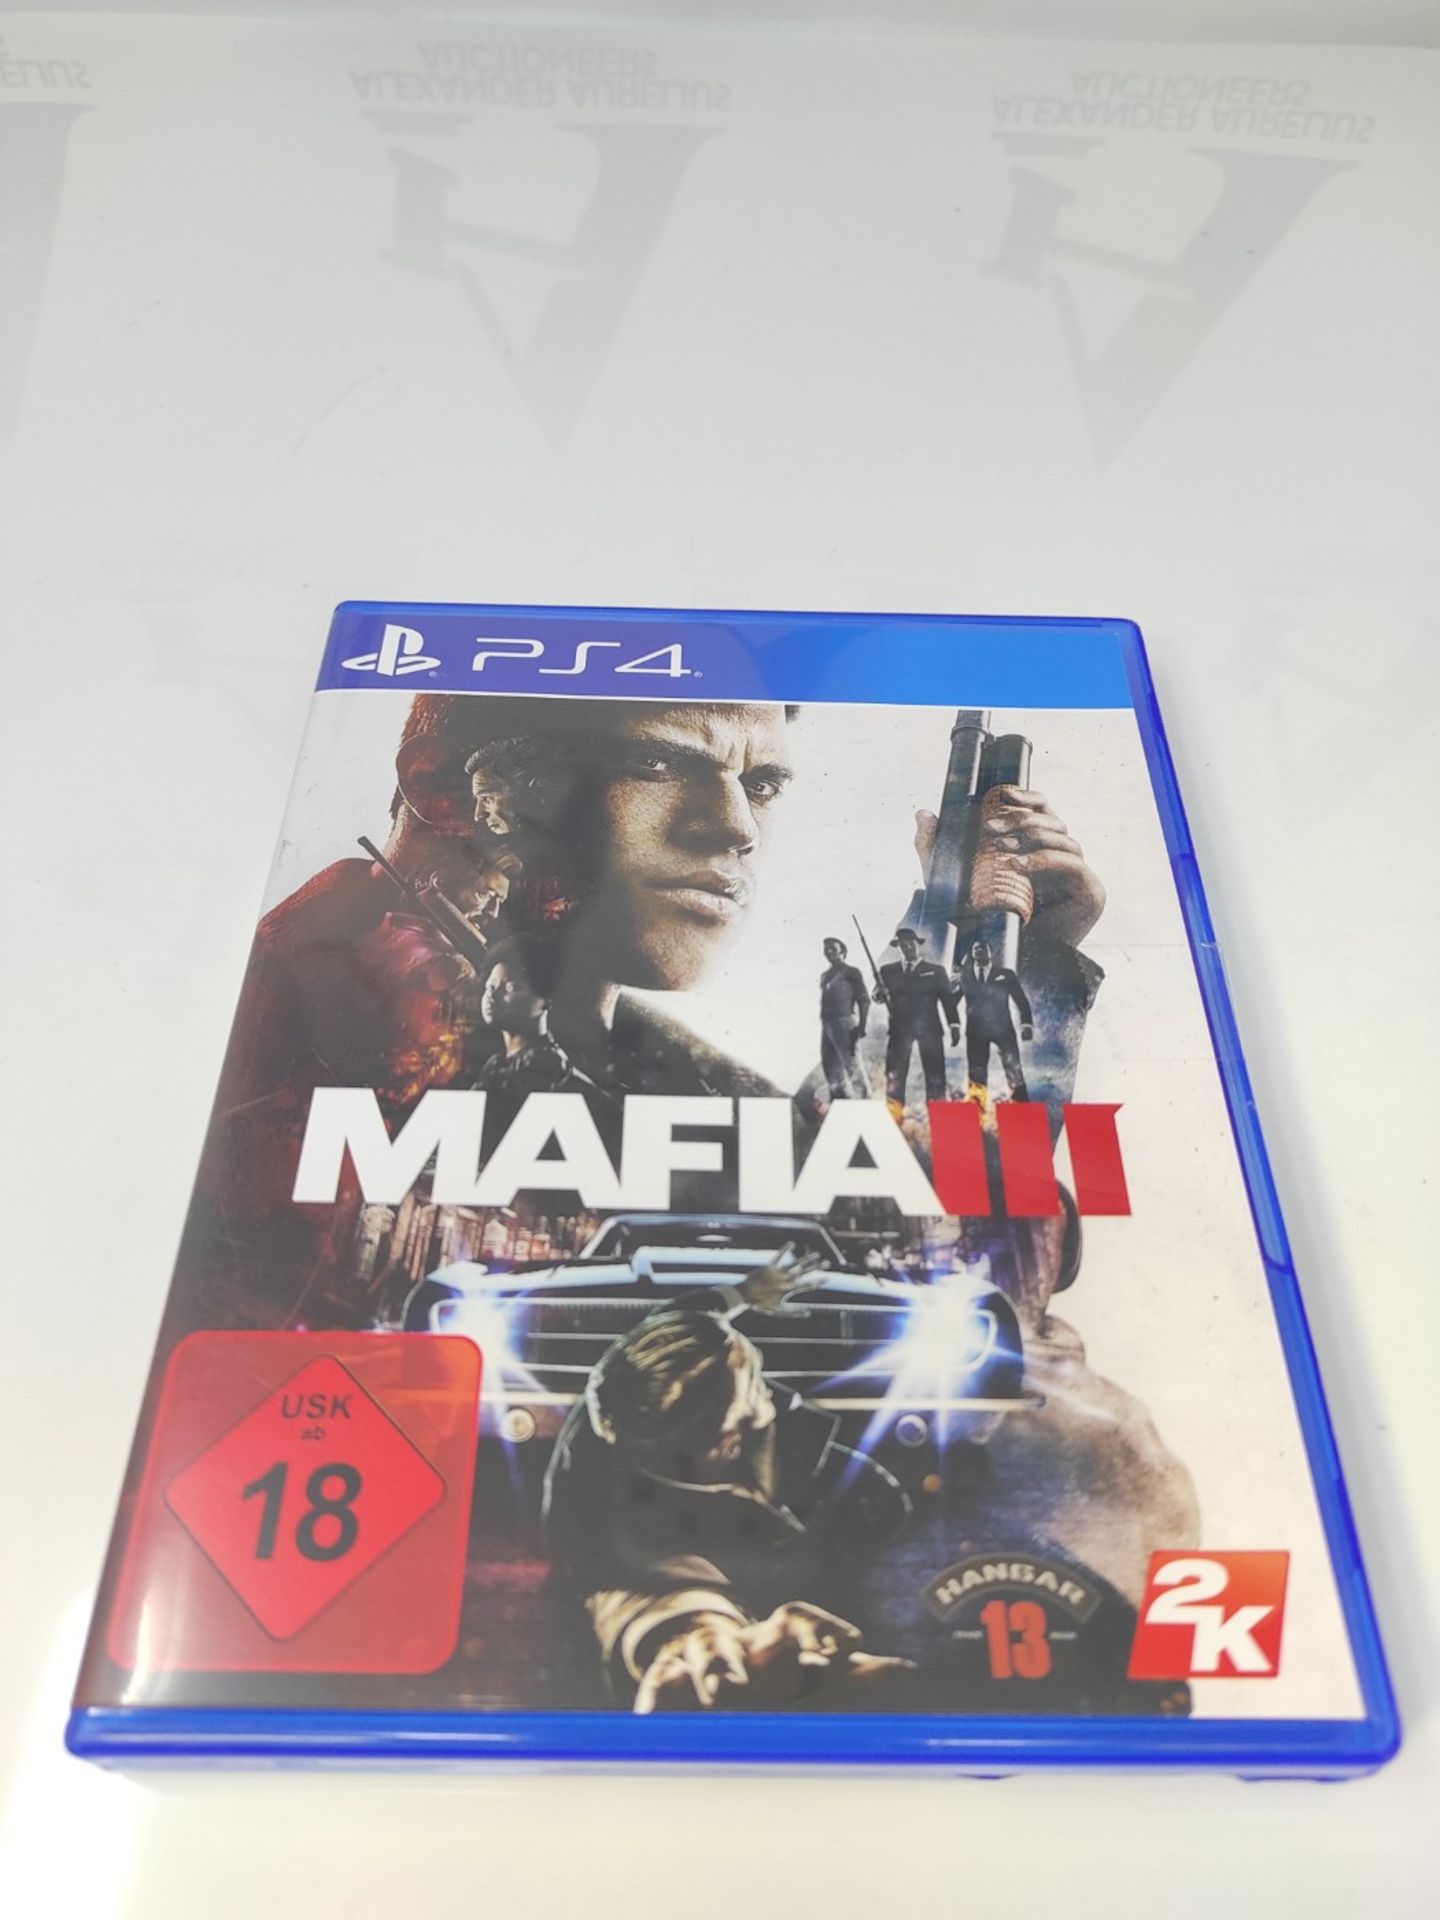 Mafia III - [PlayStation 4] - Image 2 of 3